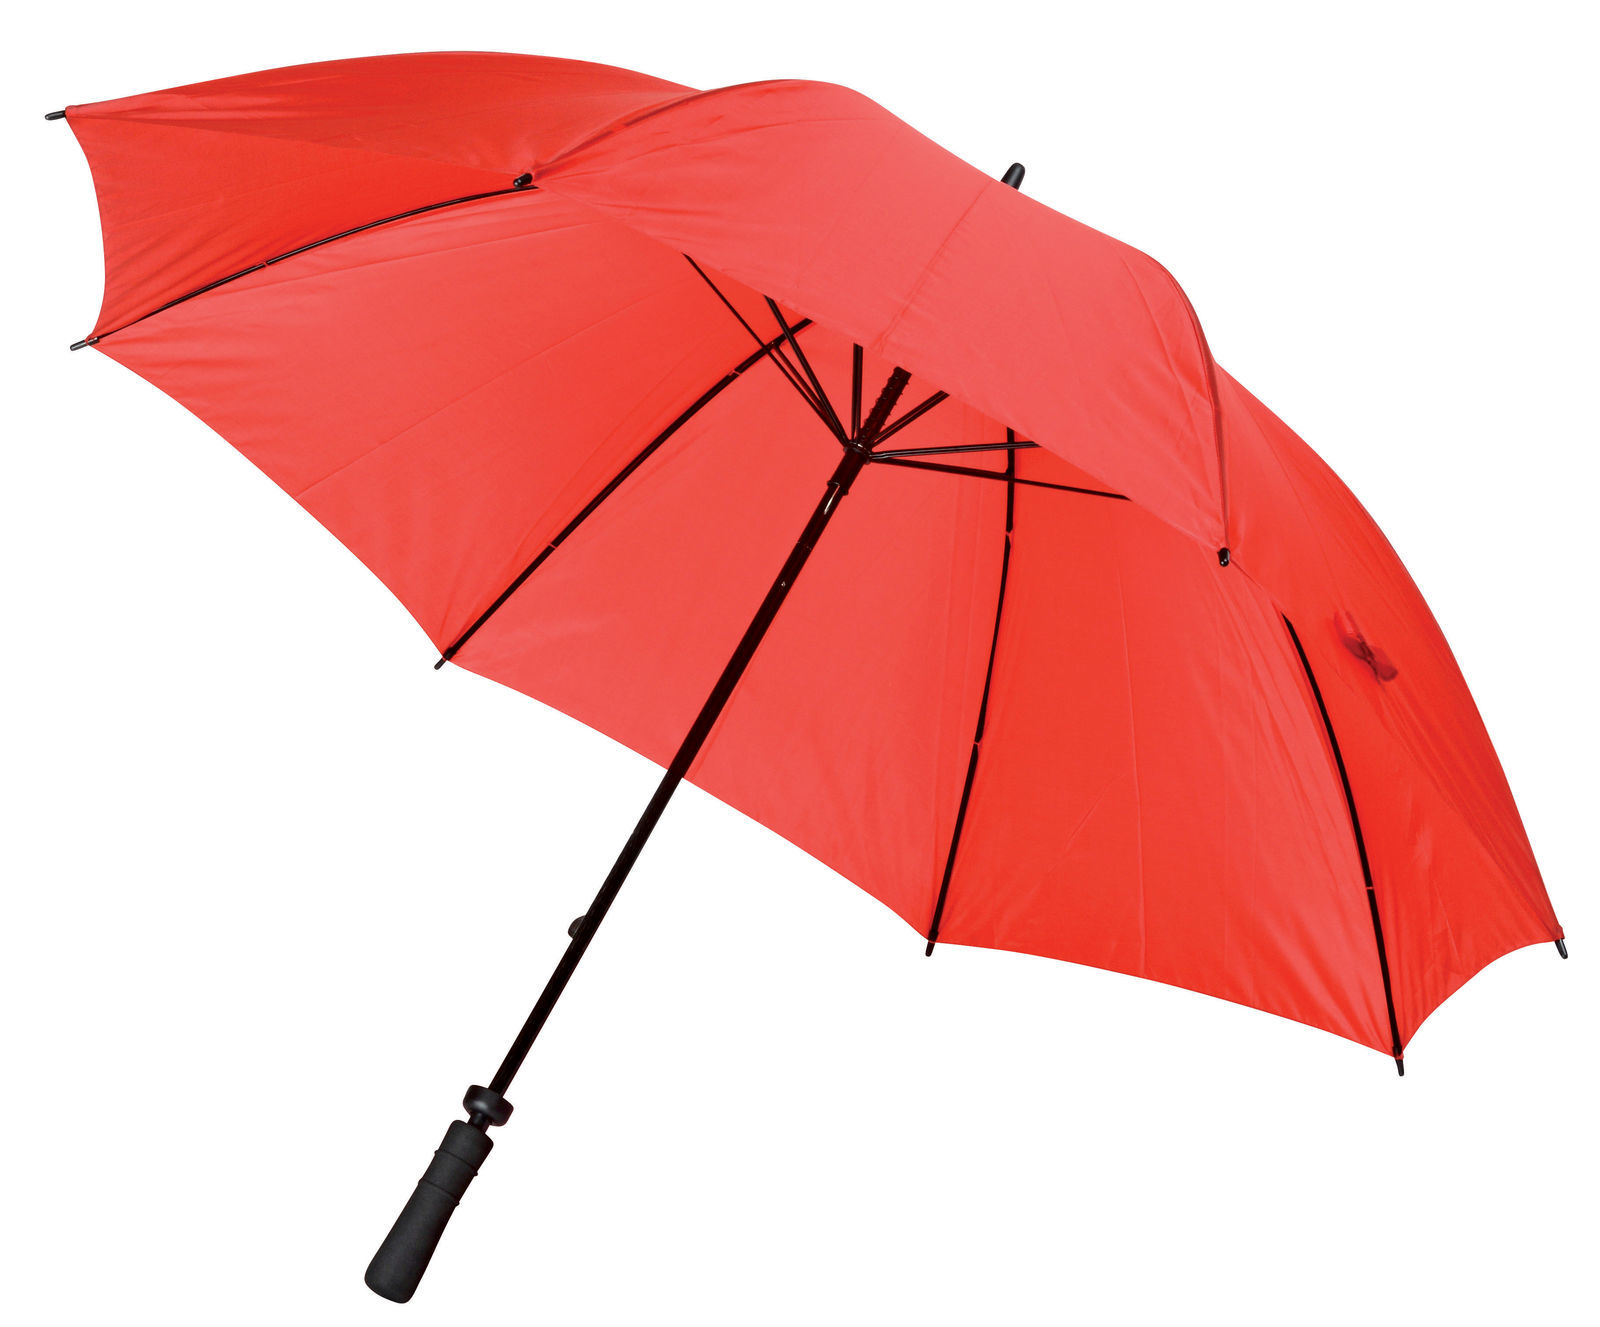 Grand Parapluie Publicitaire Golf, Parapluie publicitaire manche droit, Parapluie personnalisé, KelCom